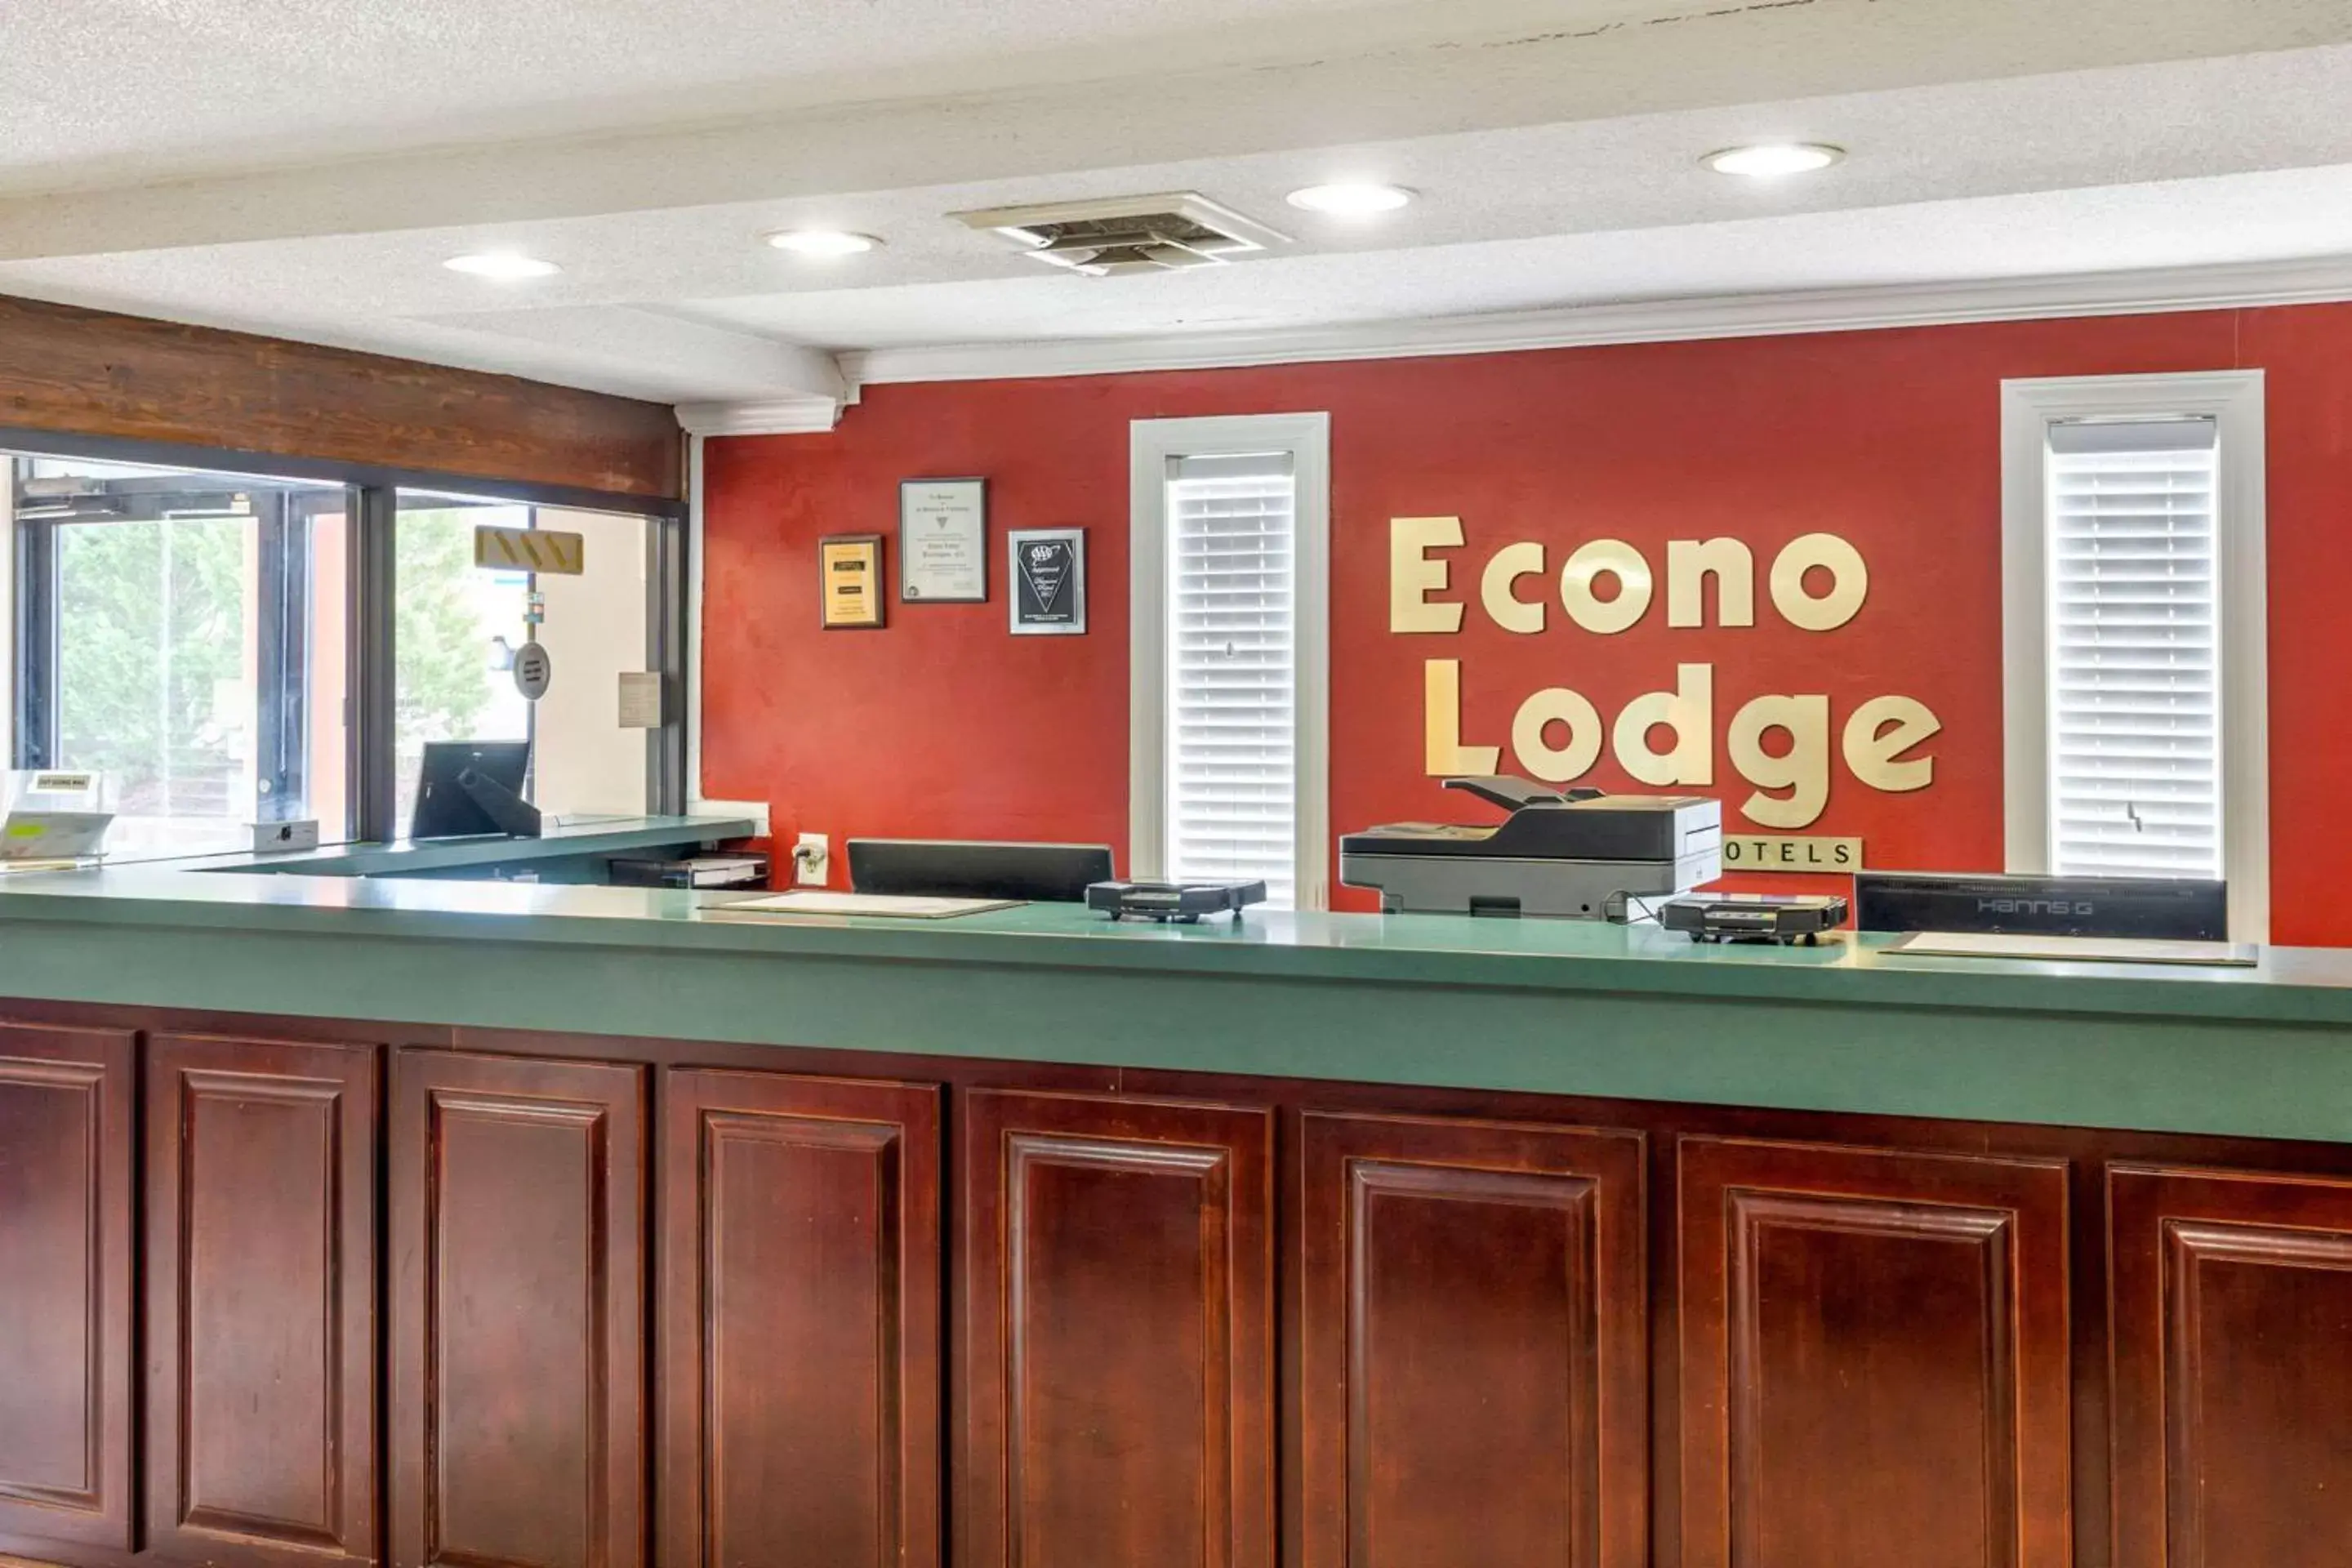 Lobby or reception, Lobby/Reception in Econo Lodge Burlington I-40